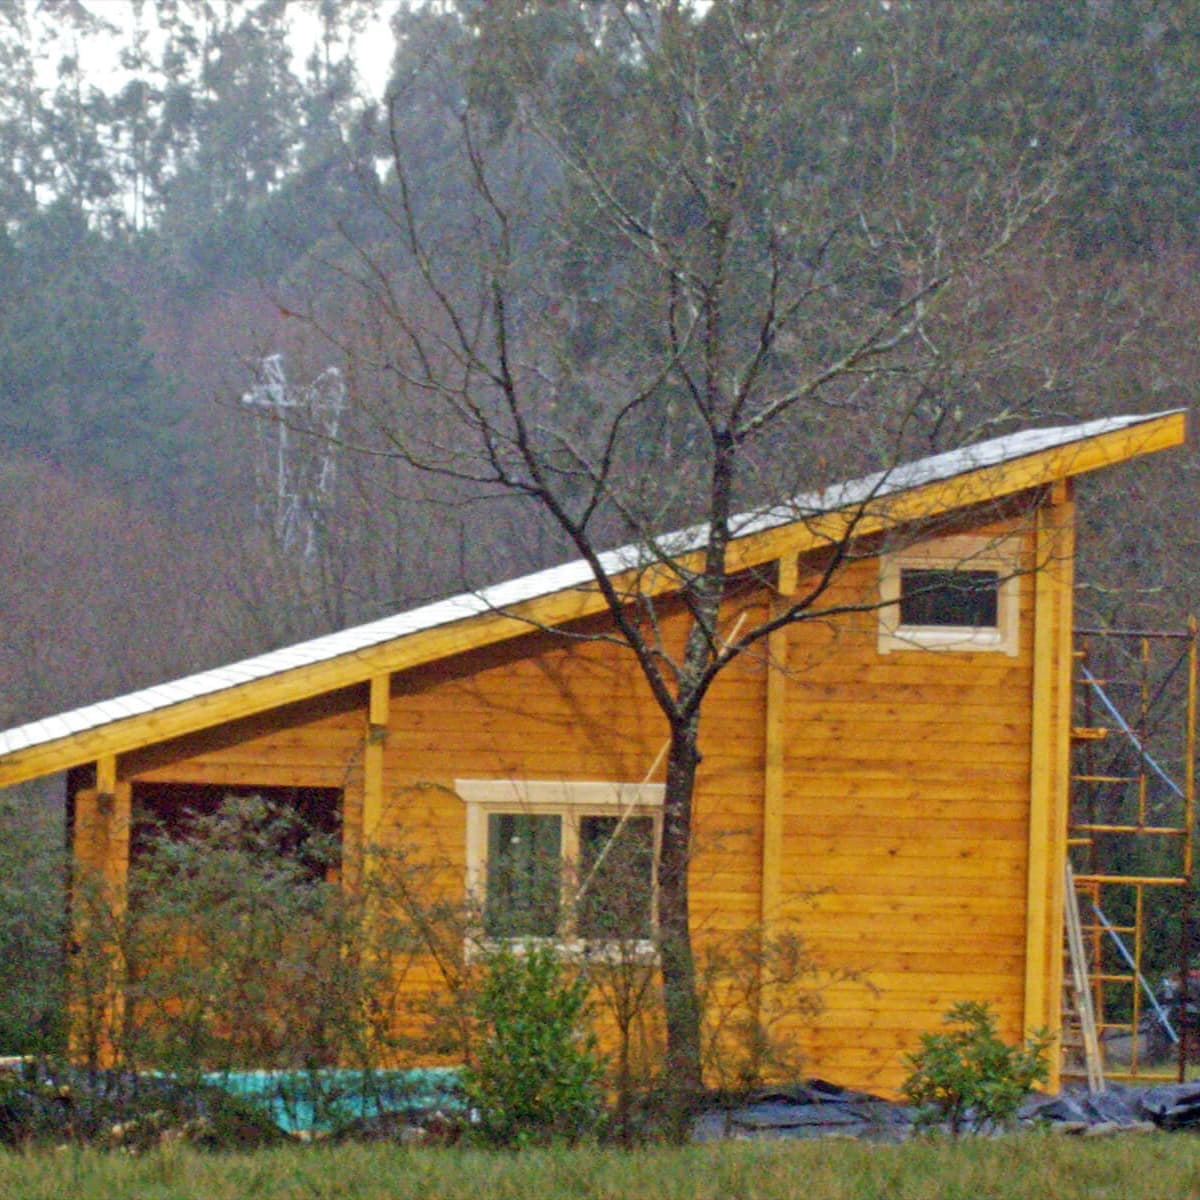 Casas cabaña loft con dos alturas